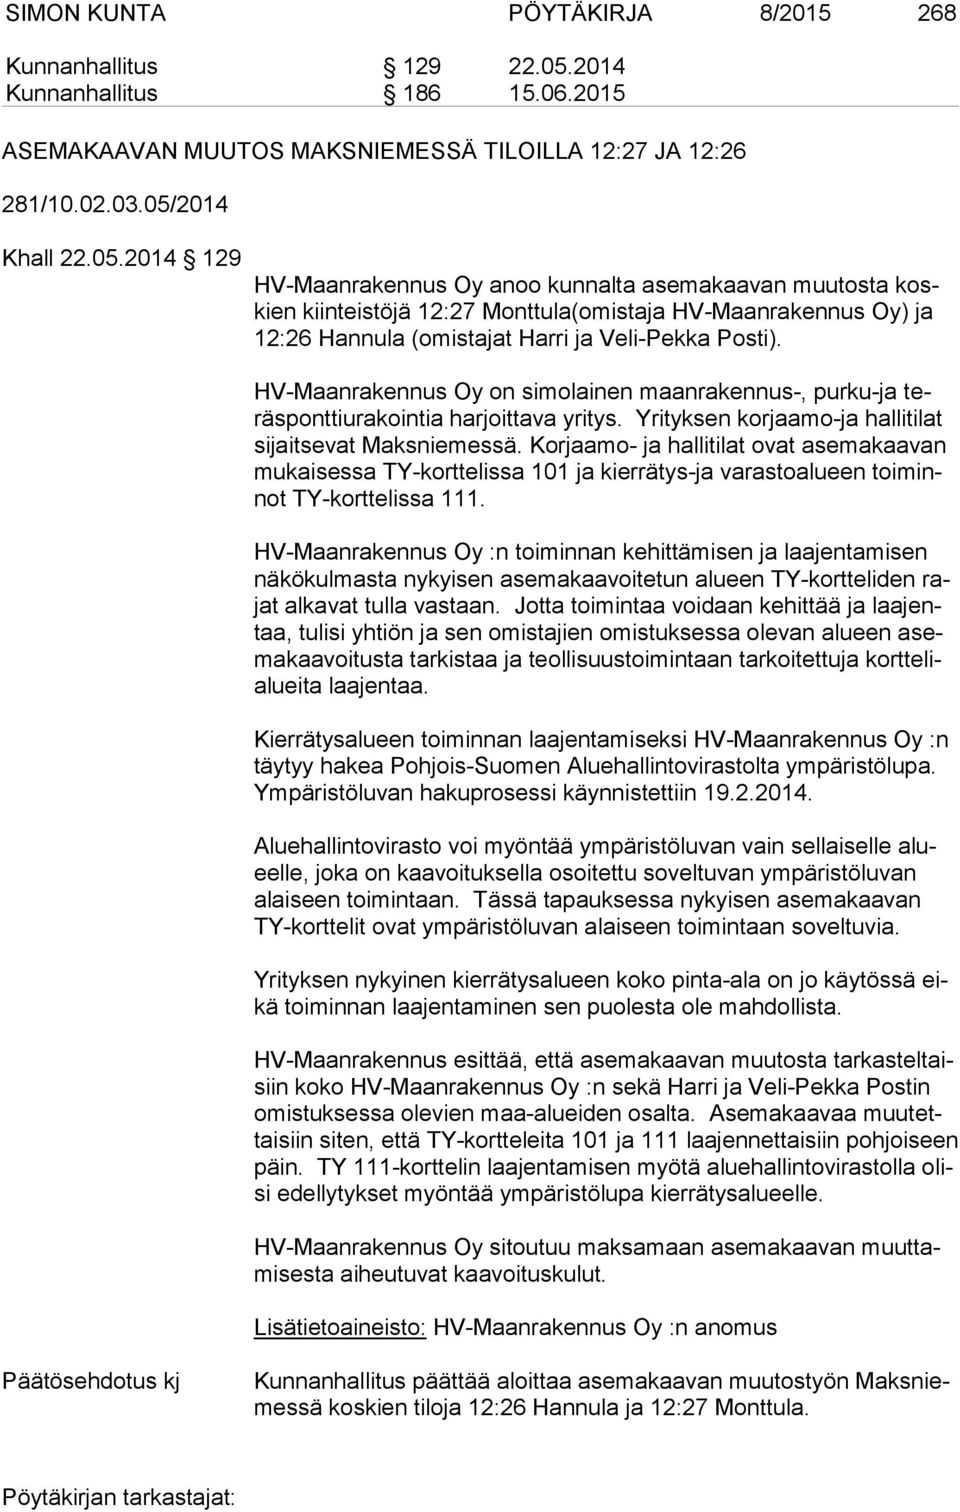 2014 Khall 22.05.2014 129 HV-Maanrakennus Oy anoo kunnalta asemakaavan muutosta koskien kiinteistöjä 12:27 Monttula(omistaja HV-Maanrakennus Oy) ja 12:26 Hannula (omistajat Harri ja Veli-Pekka Posti).